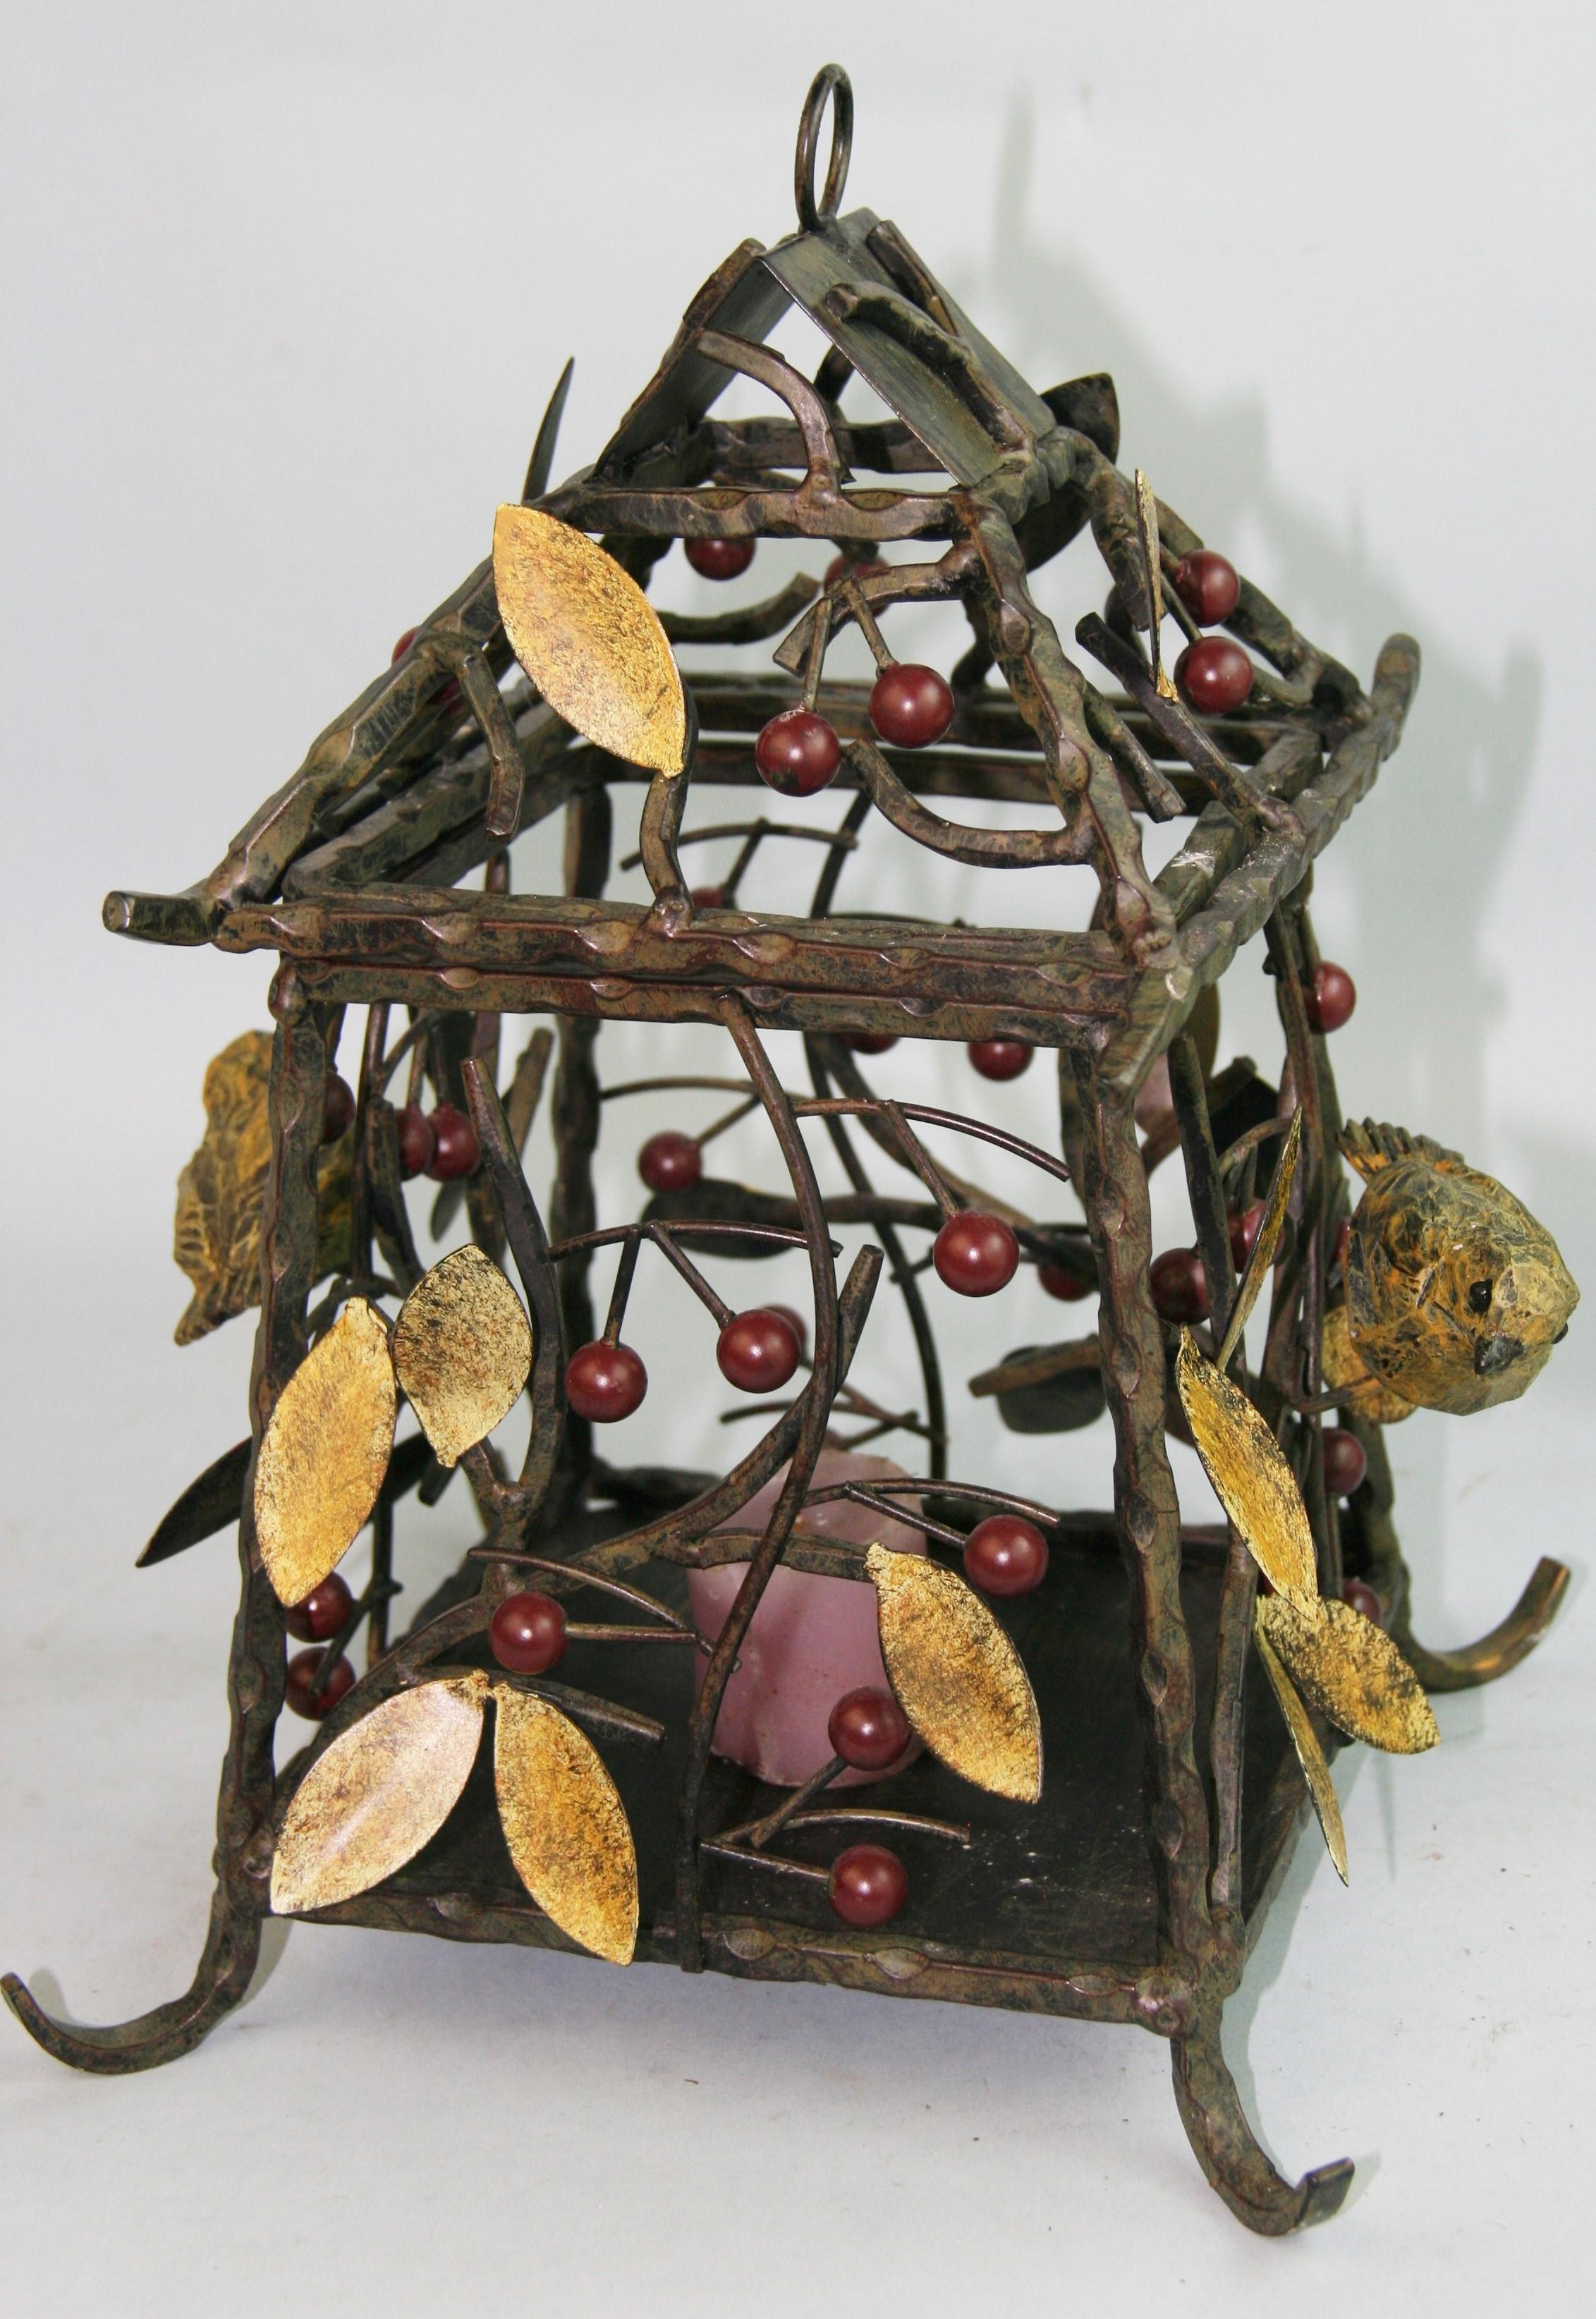 1219 Lanterne de jardin en fer fabriquée à la main et fournie avec une chaîne de 2 pieds.
Le dessus est articulé pour placer une bougie ou une ampoule (peut être câblé pour une ampoule de 60 watts).
Construction en métal torsadé avec feuilles et